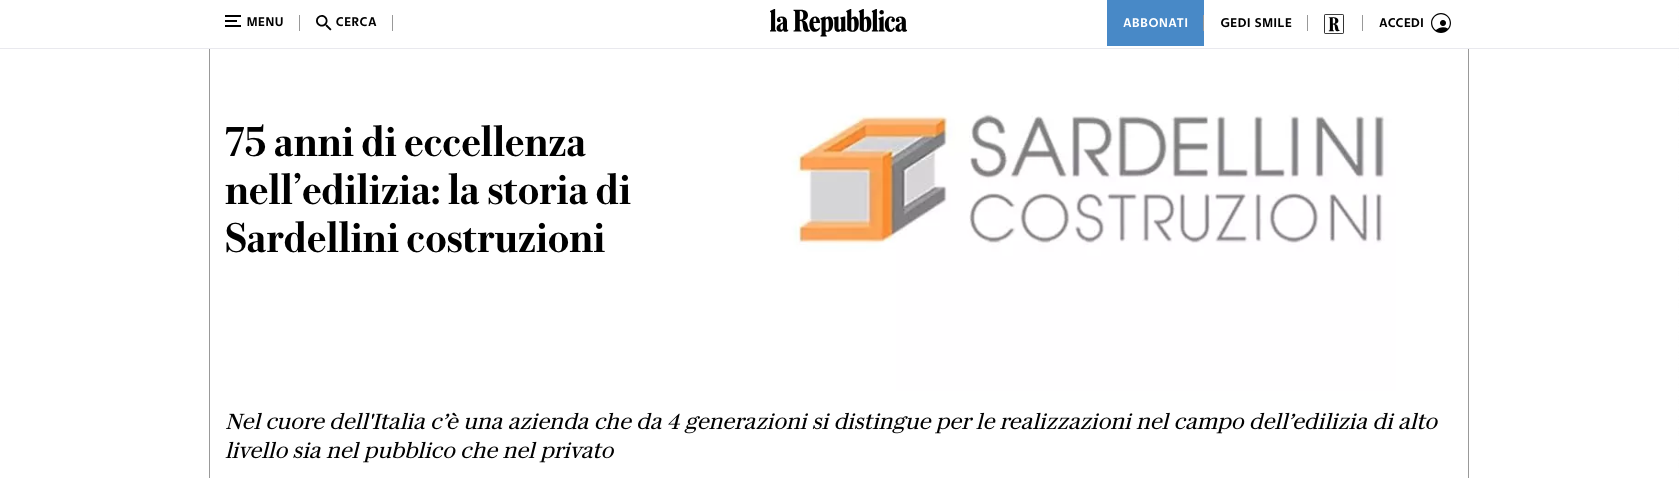 Sardellini Costruzioni: 75 anni di eccellenza celebrati da La Repubblica